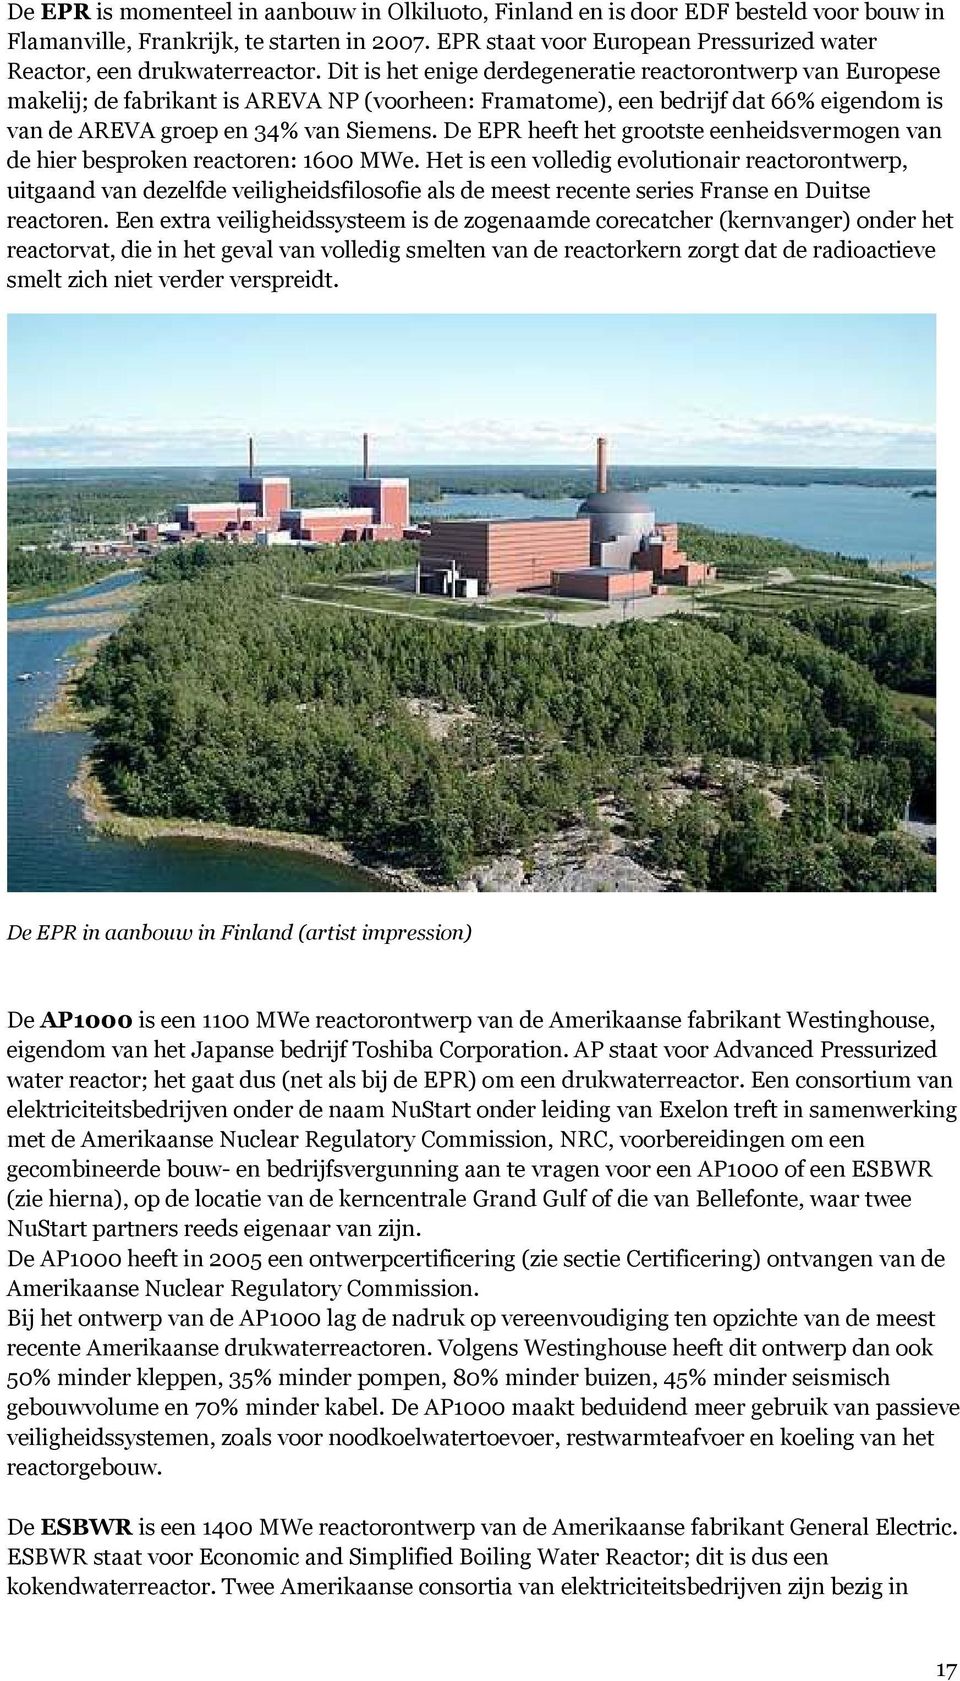 Dit is het enige derdegeneratie reactorontwerp van Europese makelij; de fabrikant is AREVA NP (voorheen: Framatome), een bedrijf dat 66% eigendom is van de AREVA groep en 34% van Siemens.